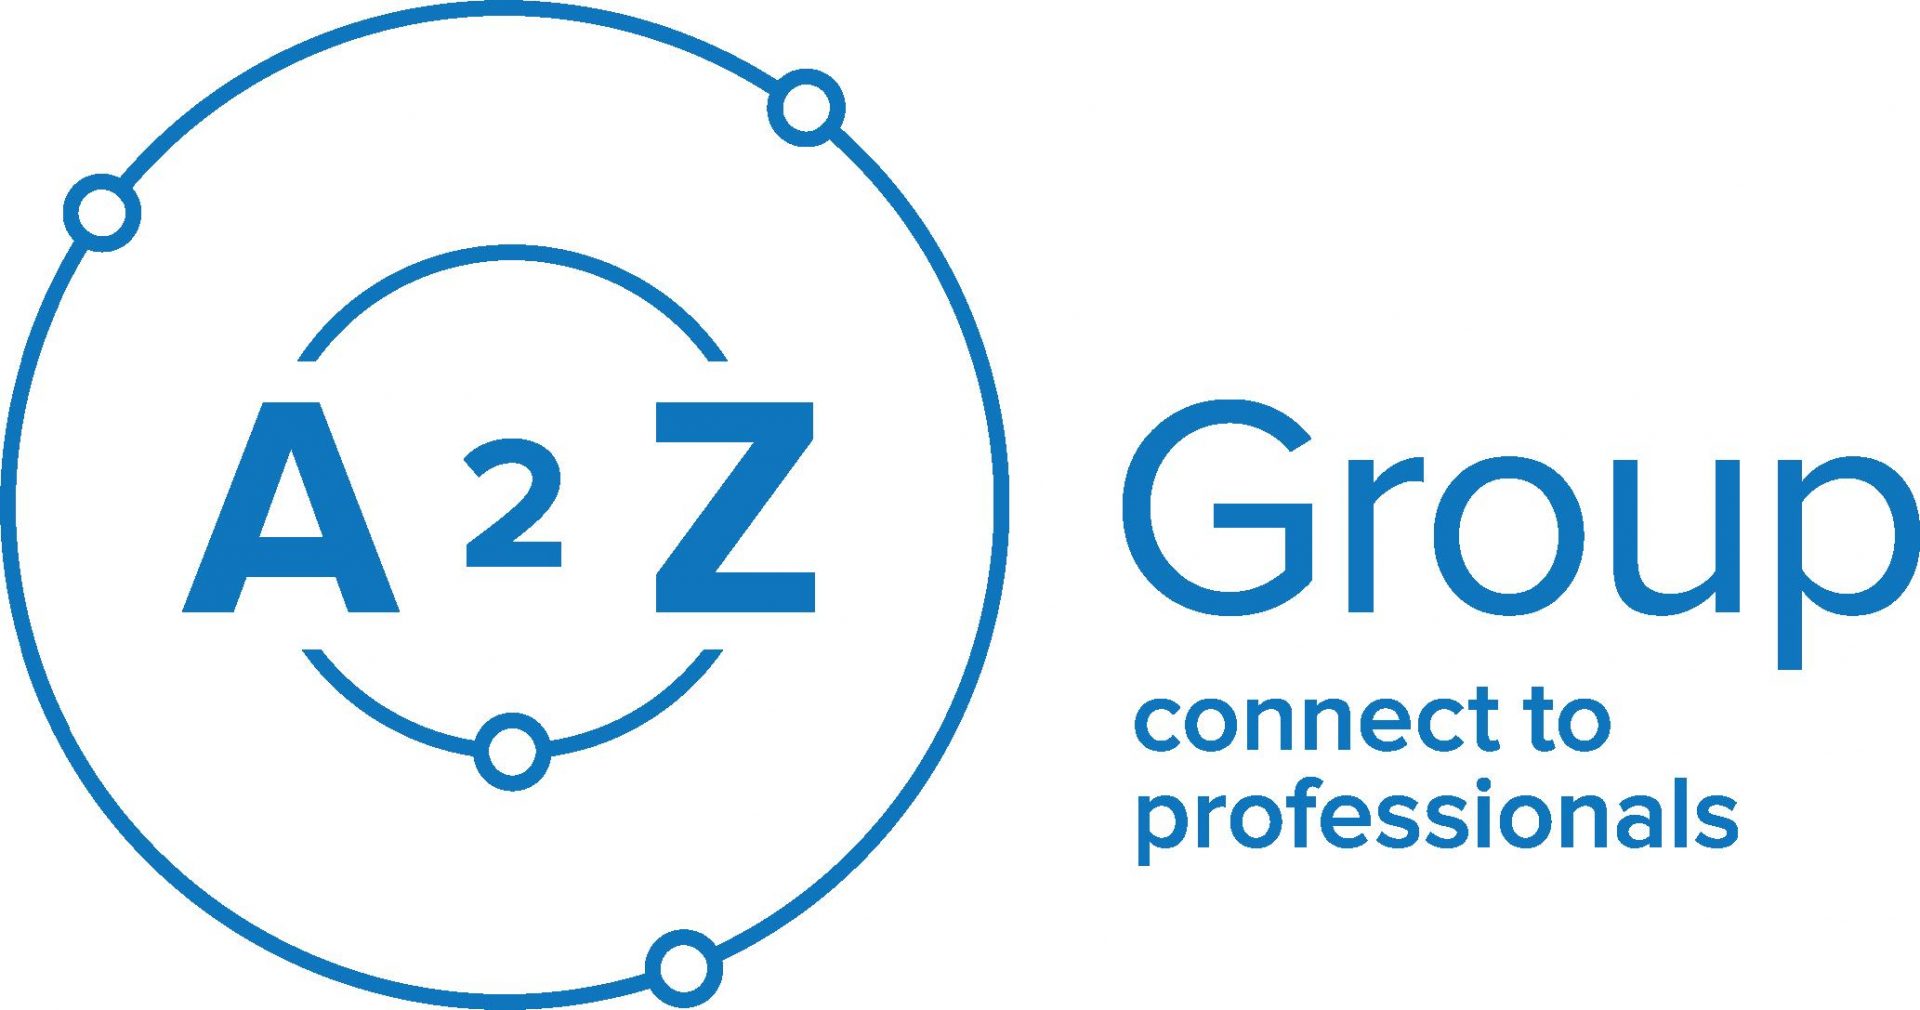 AToZ grupas logo